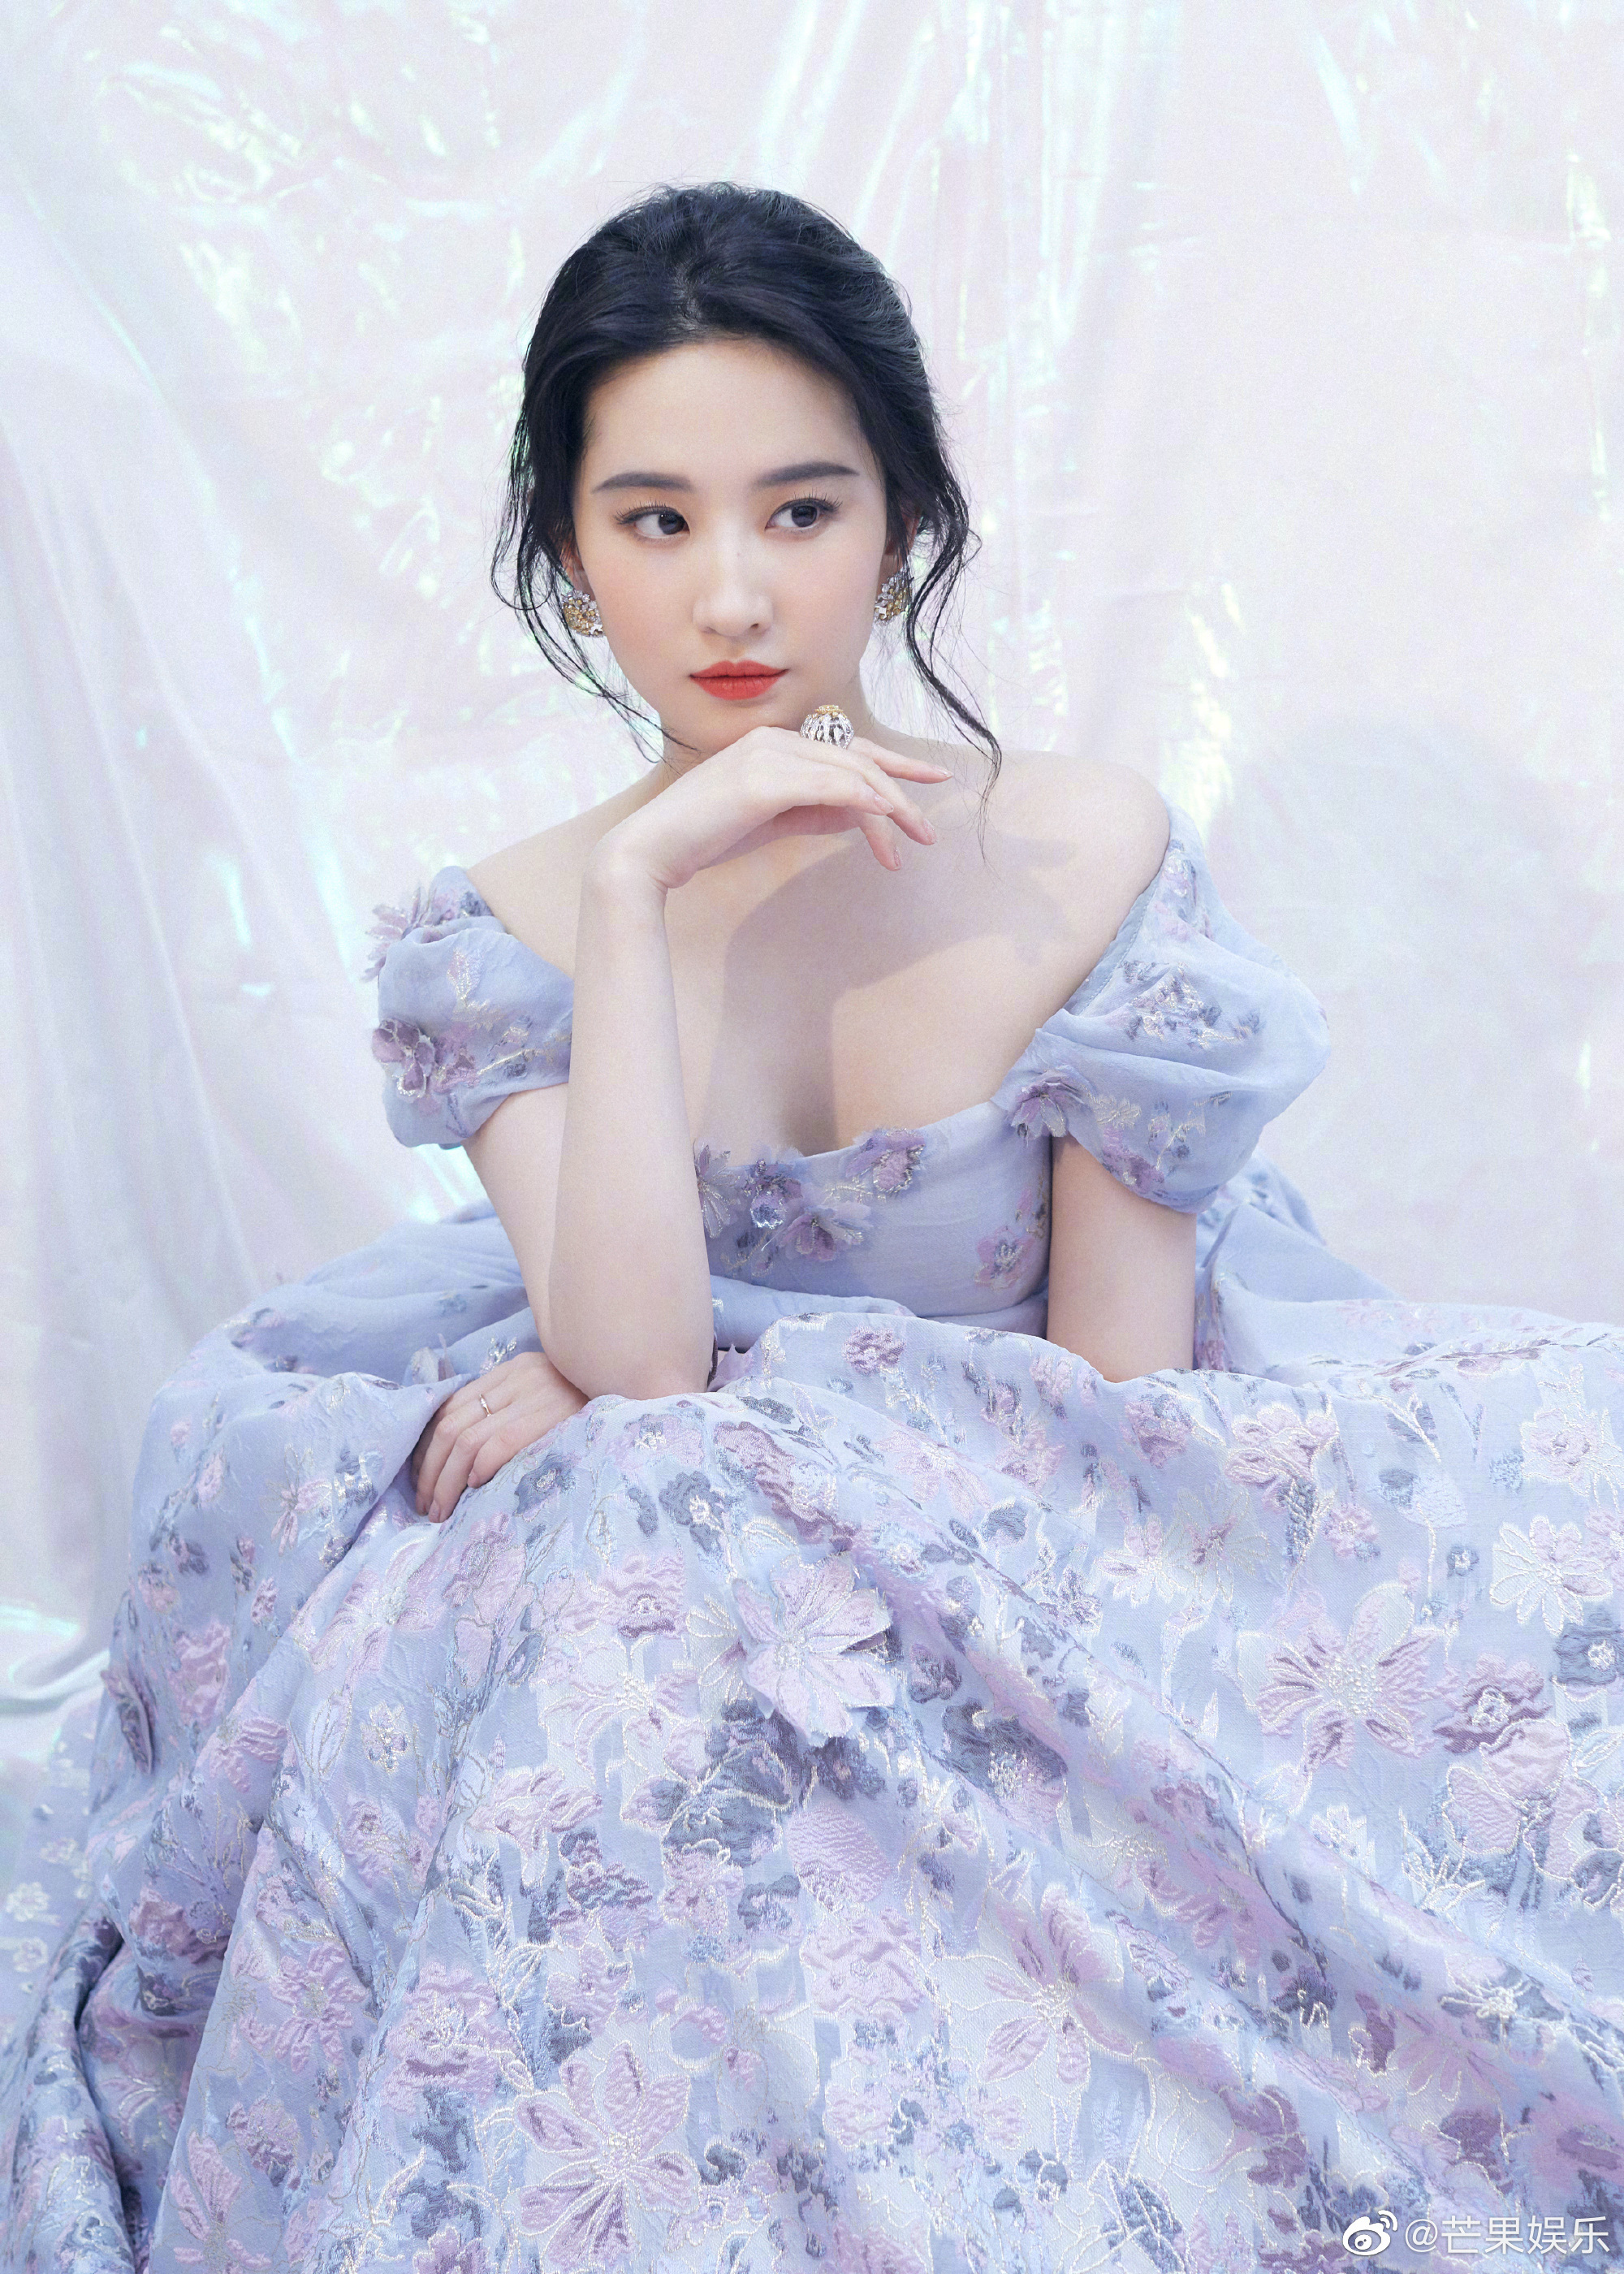 Hóa công chúa cổ tích, Lưu Diệc Phi lên thẳng top 1 Weibo nhưng ...